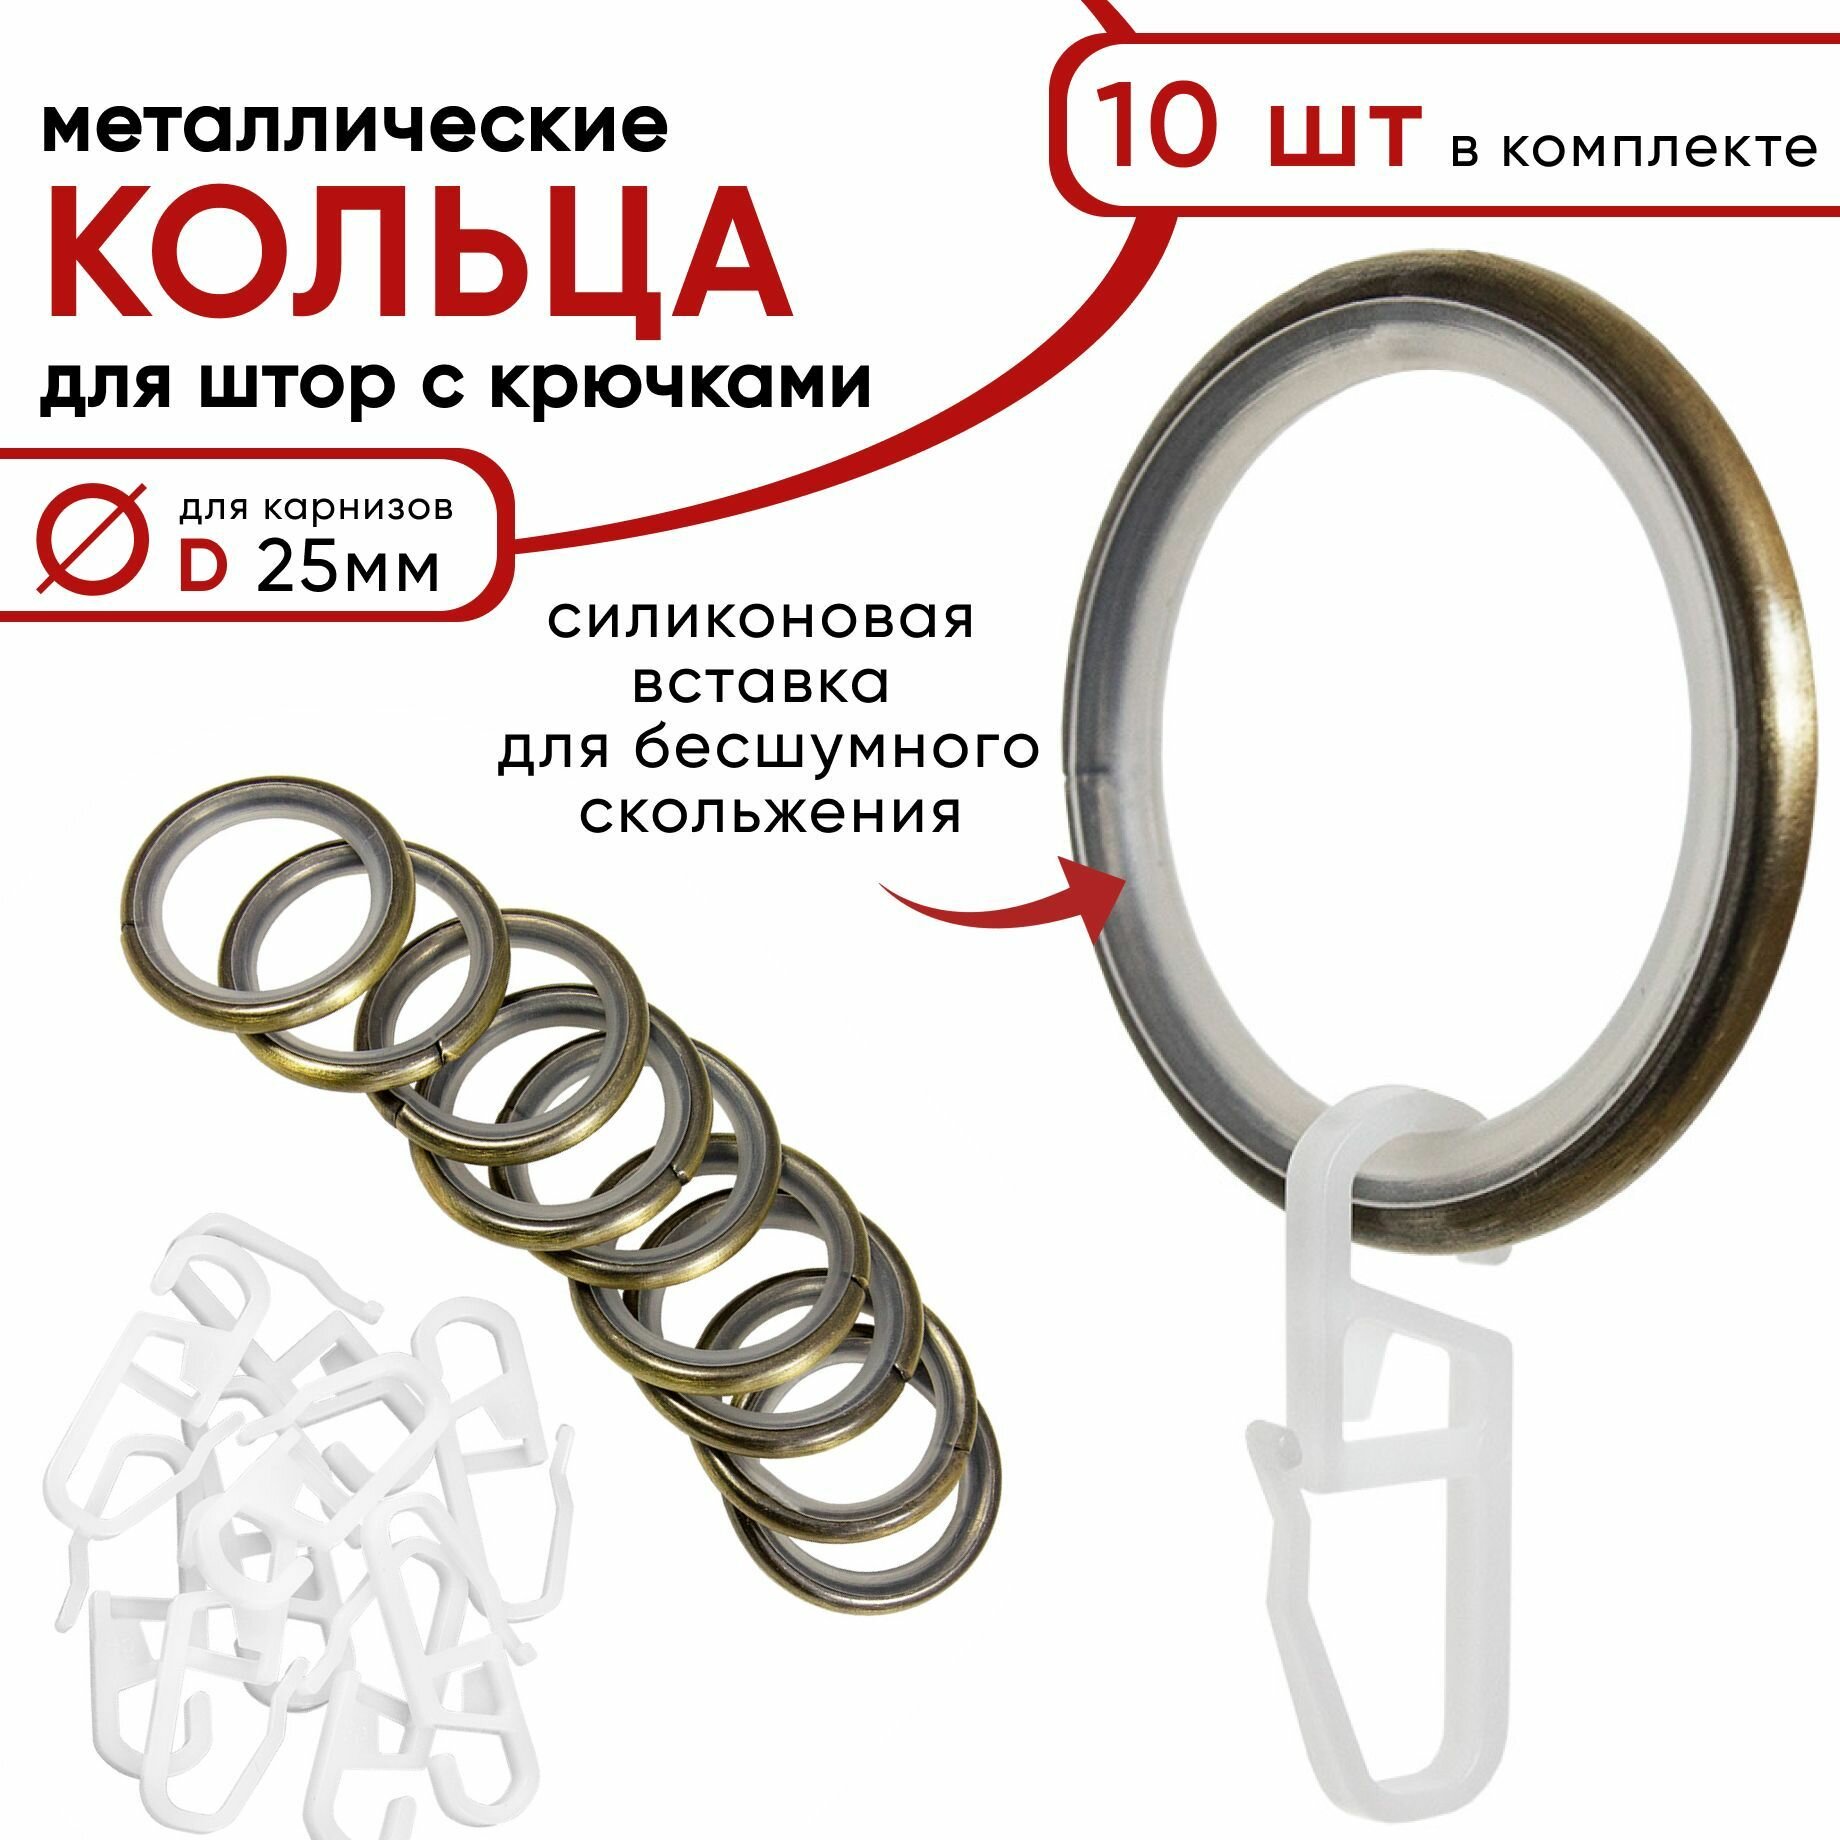 Металлические кольца для штор с крючками для карнизов D25 бесшумные бронза 10 штук